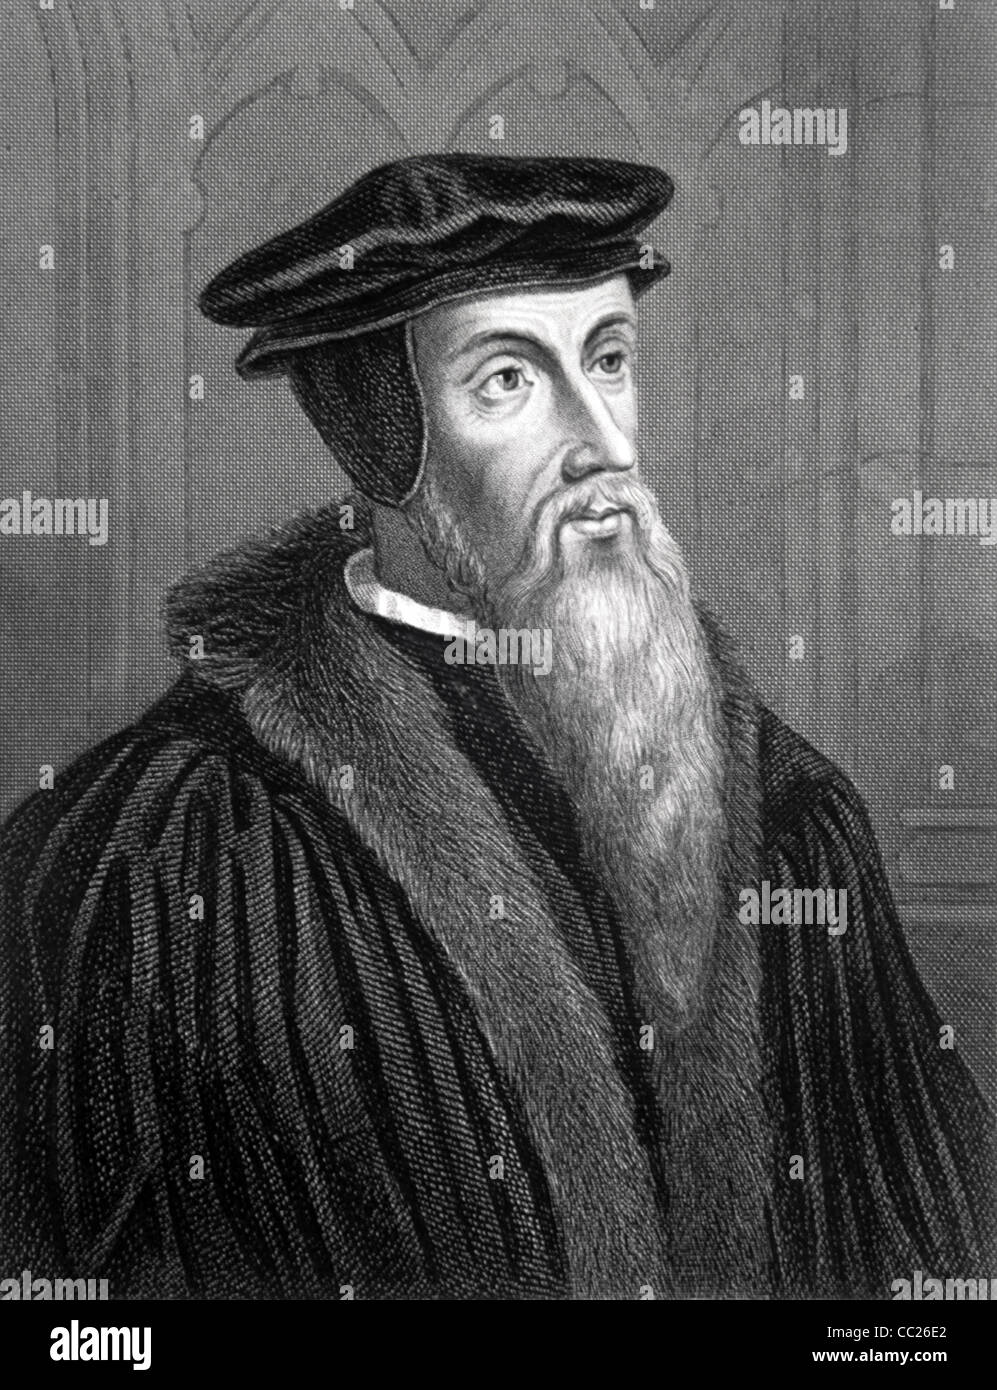 Ritratto di Giovanni Calvino (1509-1564) Teologo francese, riformatore della Chiesa, Umanista e Pastore. c19 Ritratto incisione di Woolnoth. Illustrazione vintage Foto Stock